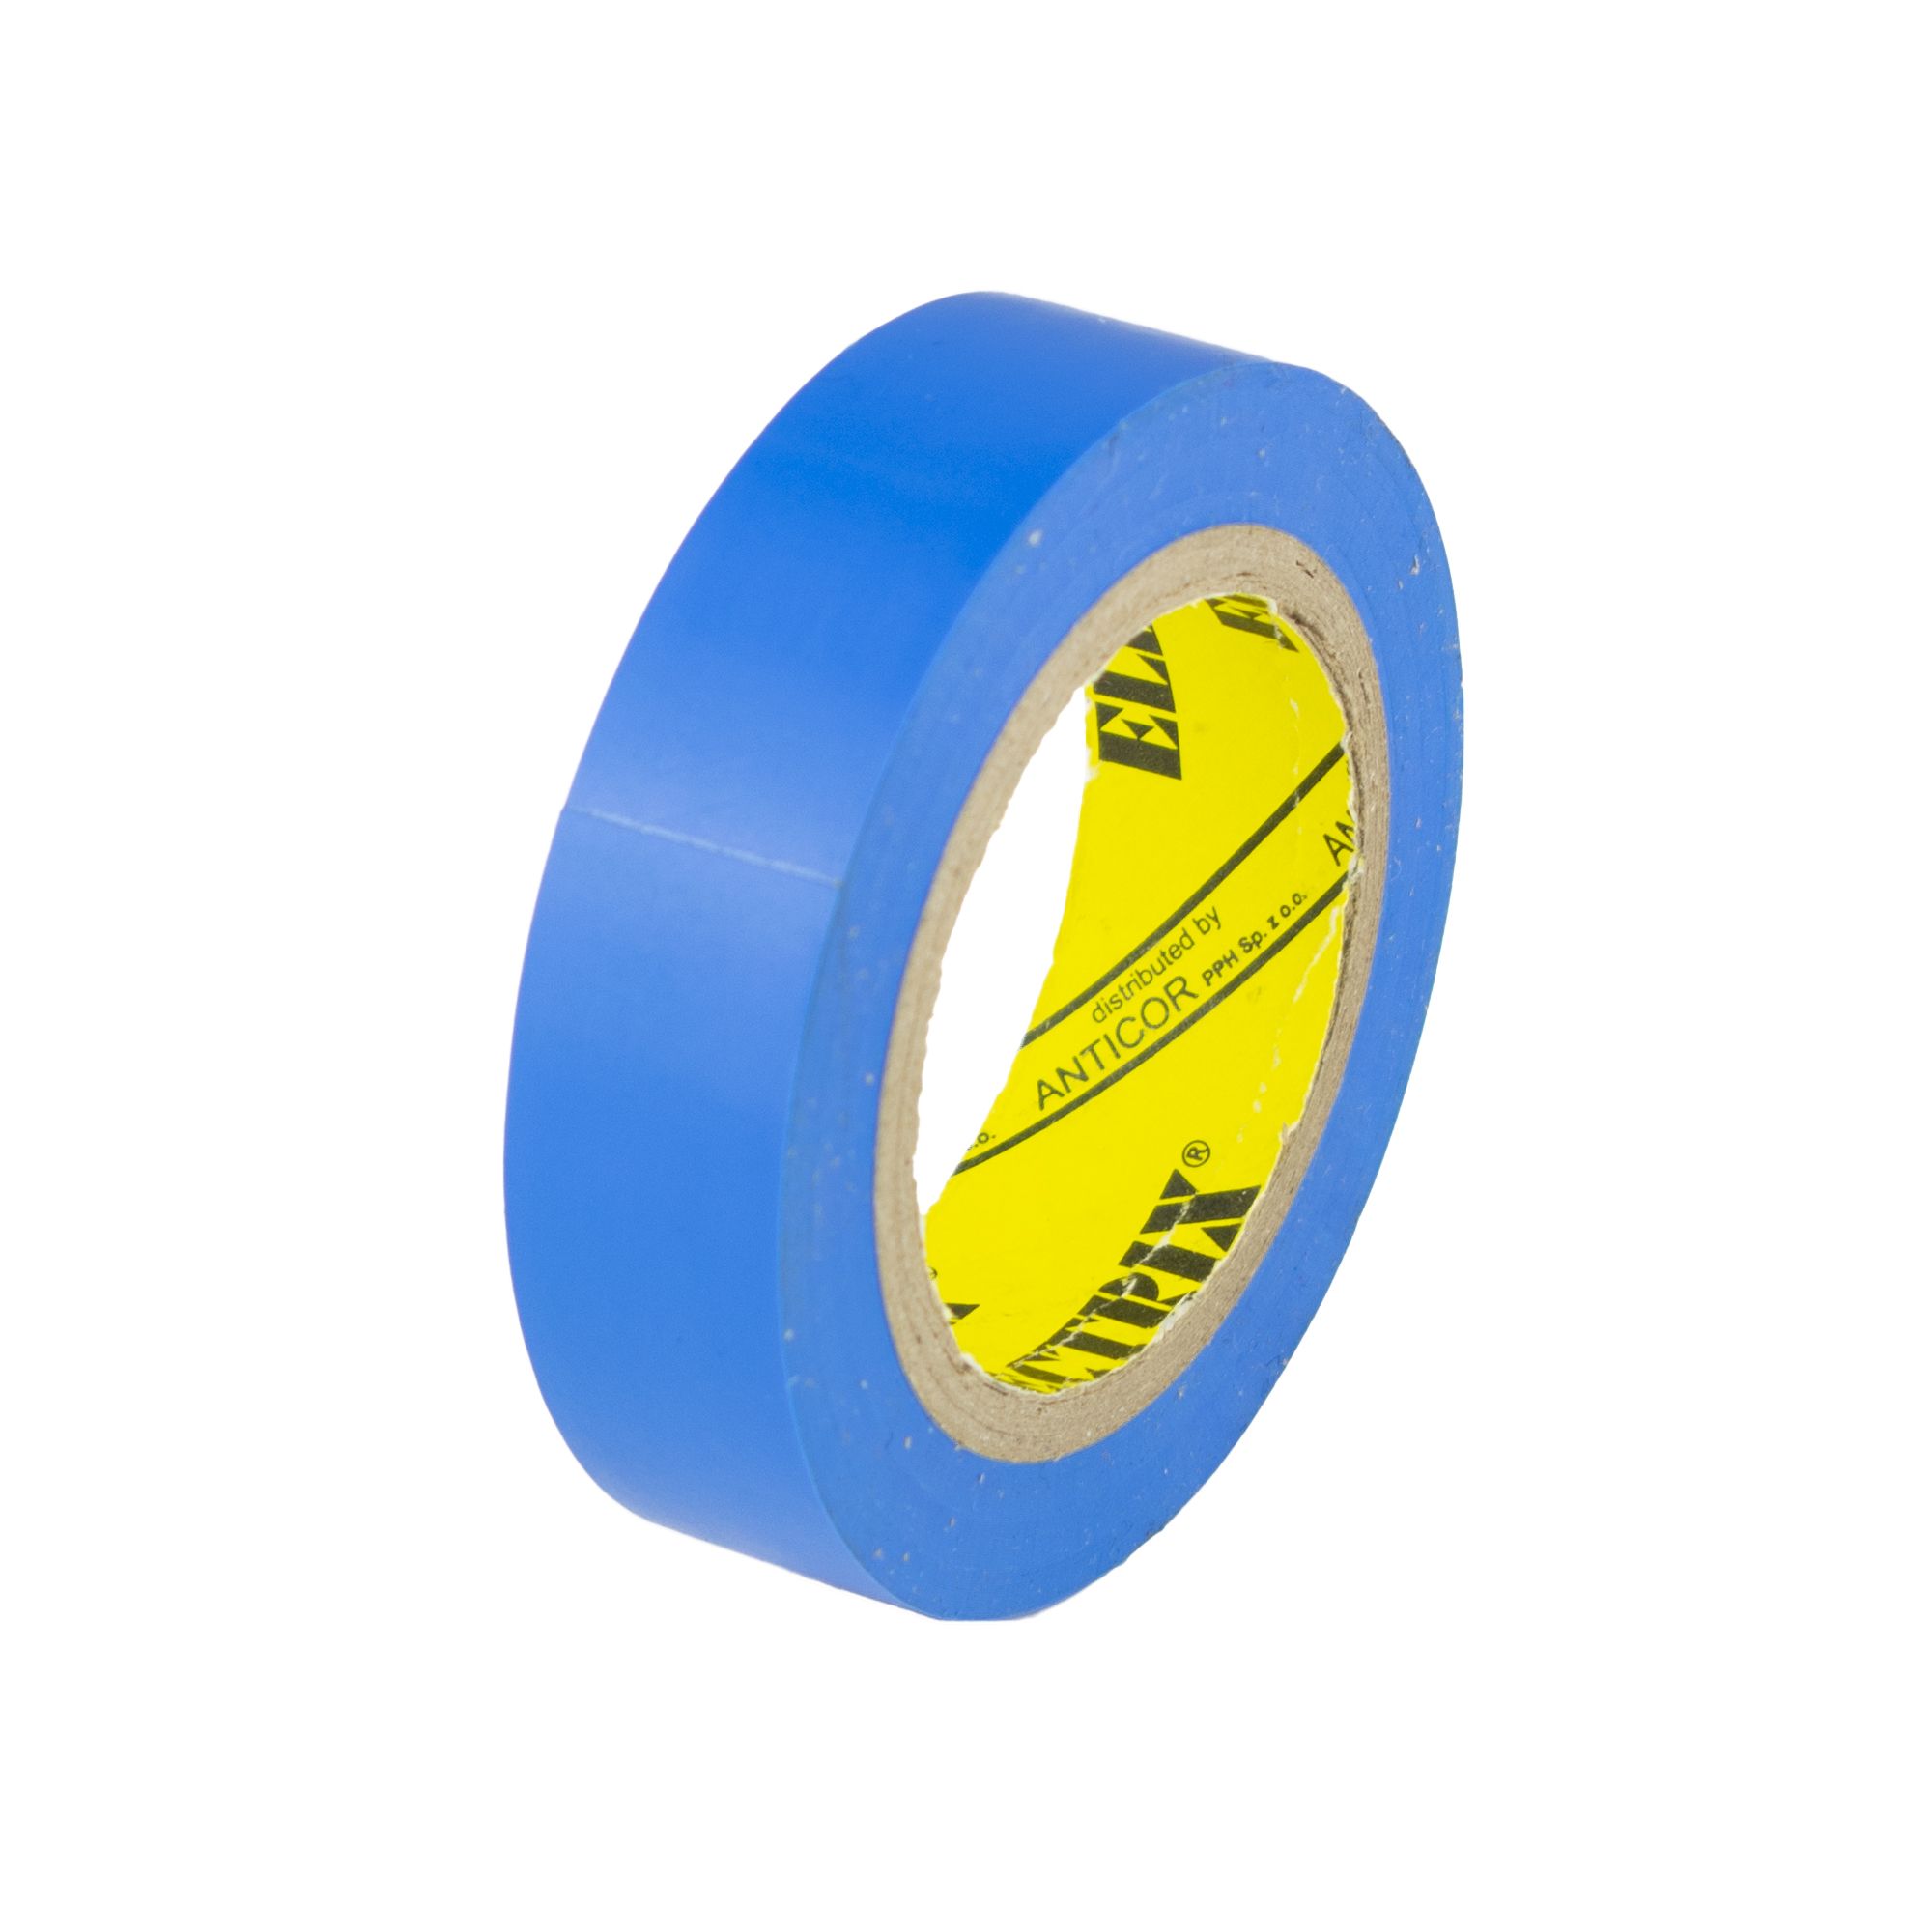 Izolační páska PVC 15mm / 10m, modrá 211 0.032 Kg ŽELEZÁŽŘSTVÍ Sklad4 KB- V9517